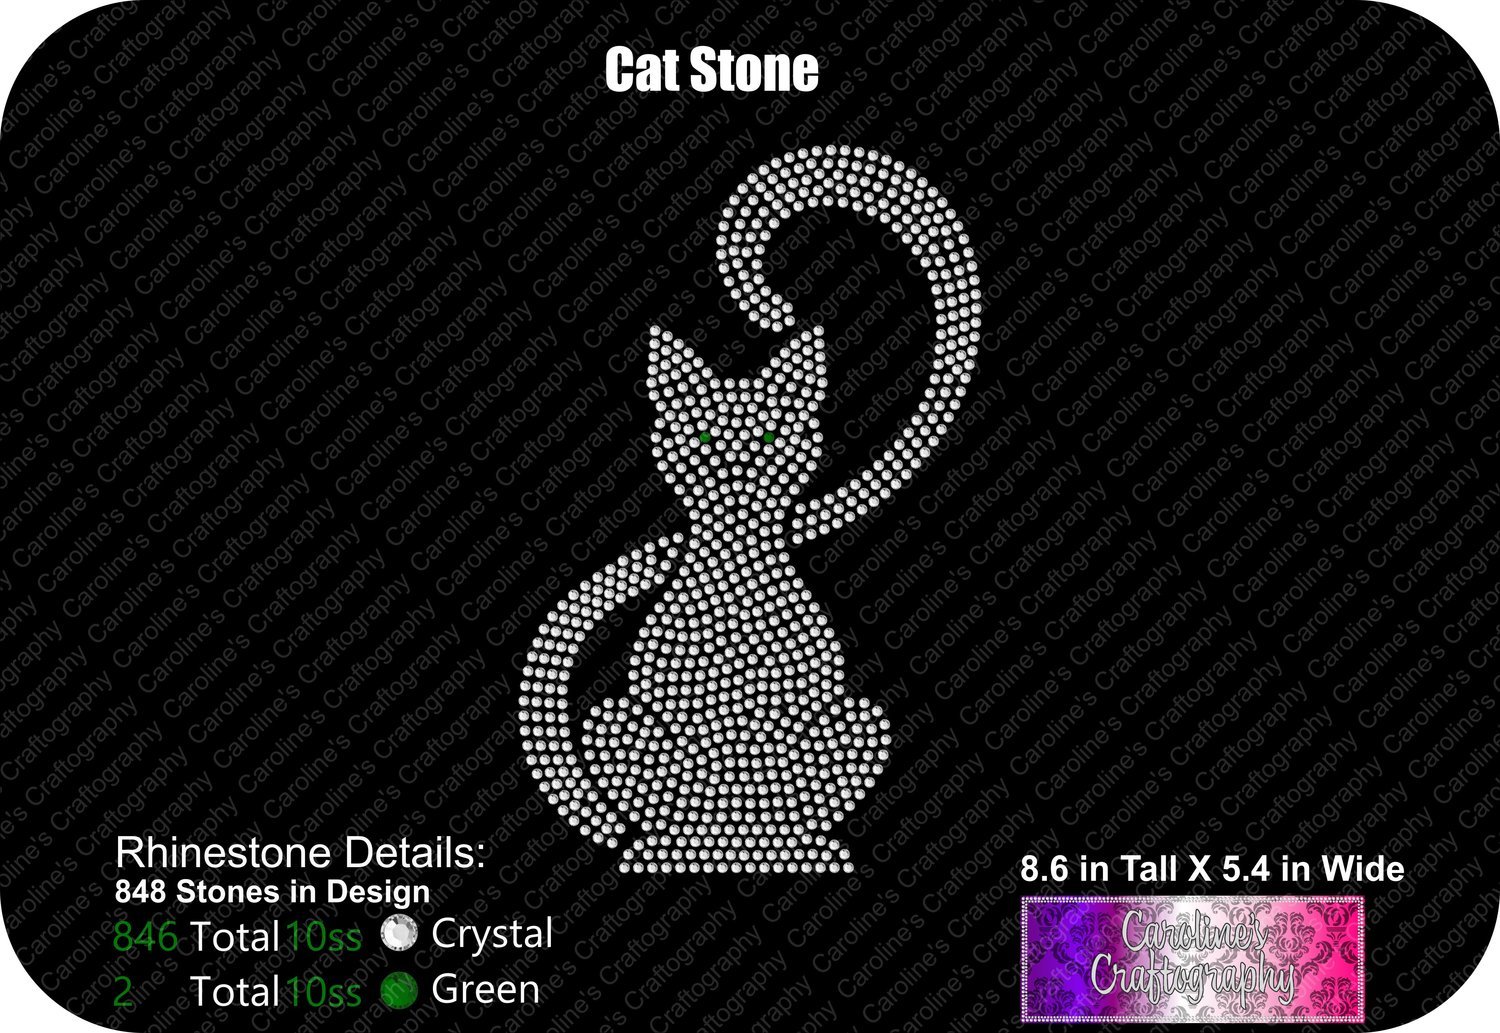 Cat Stone